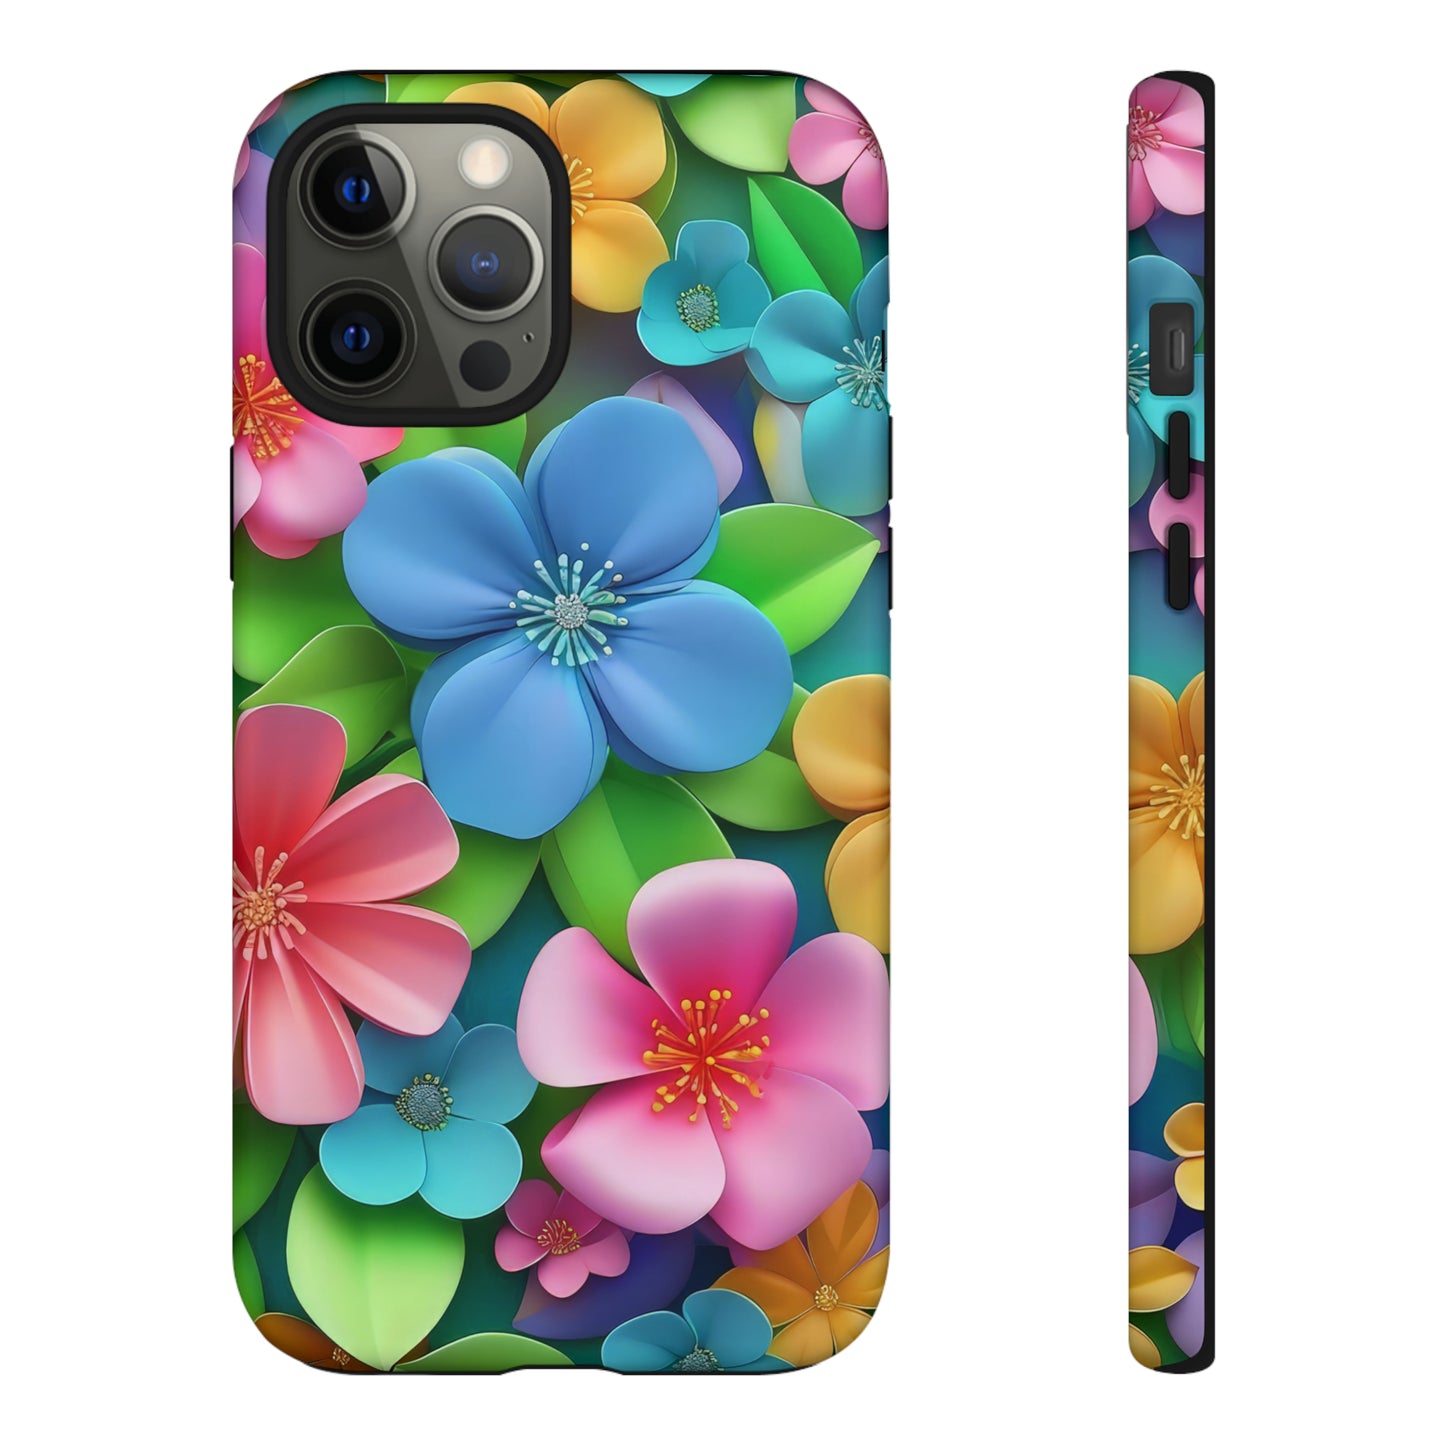 Garden of 3D Flowers IPhone Case